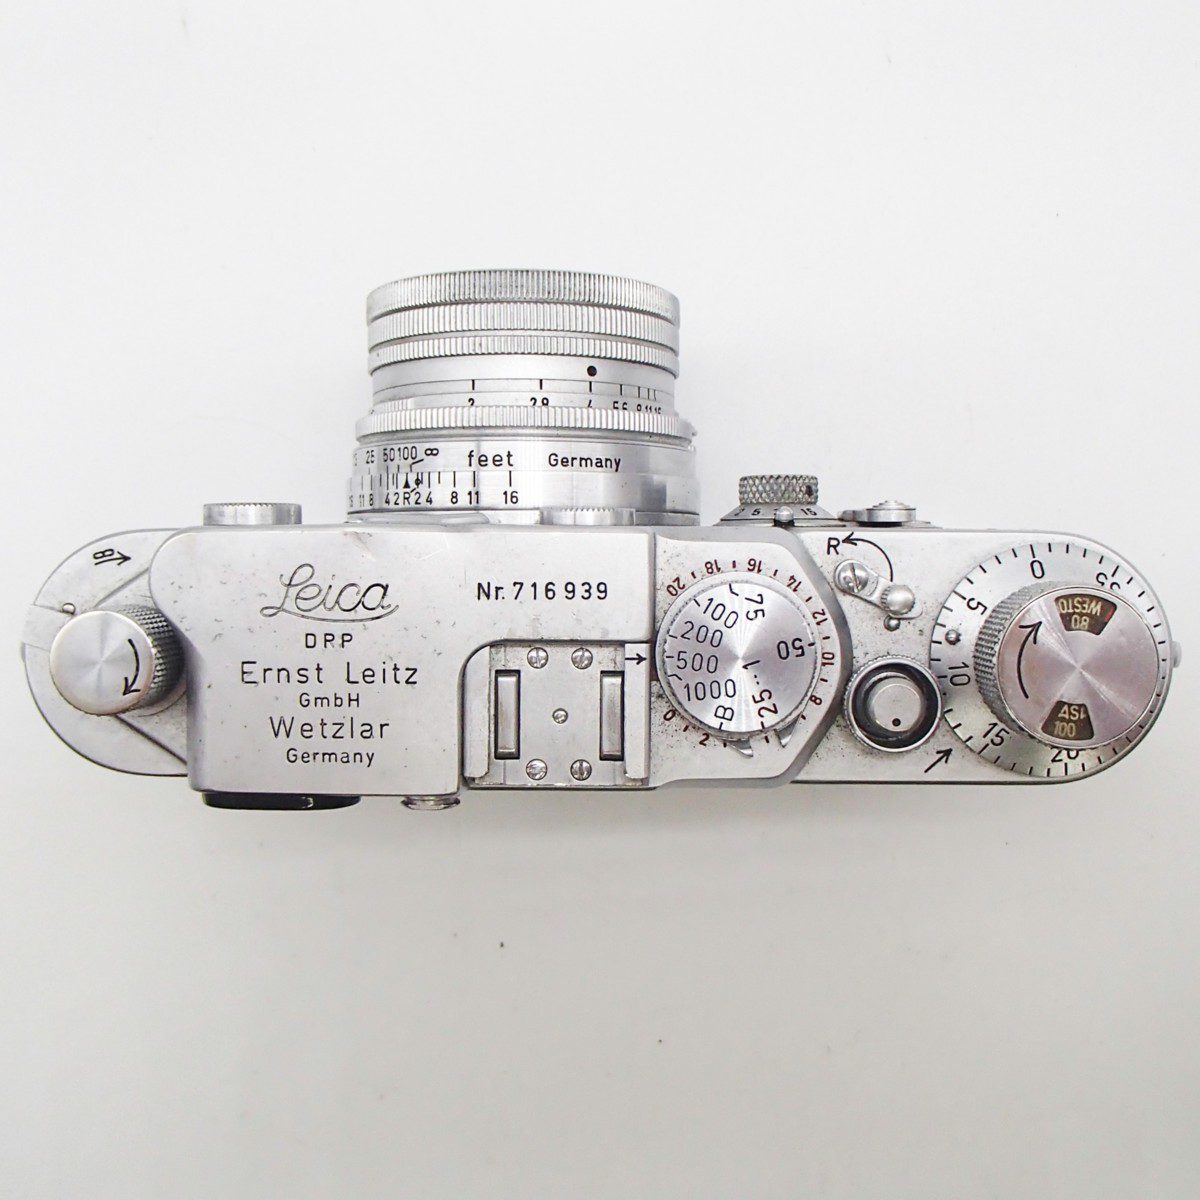 ライカ Leica DRP Ernst Leitz GmbH Wetzlar Germany f＝5cm 12　上から